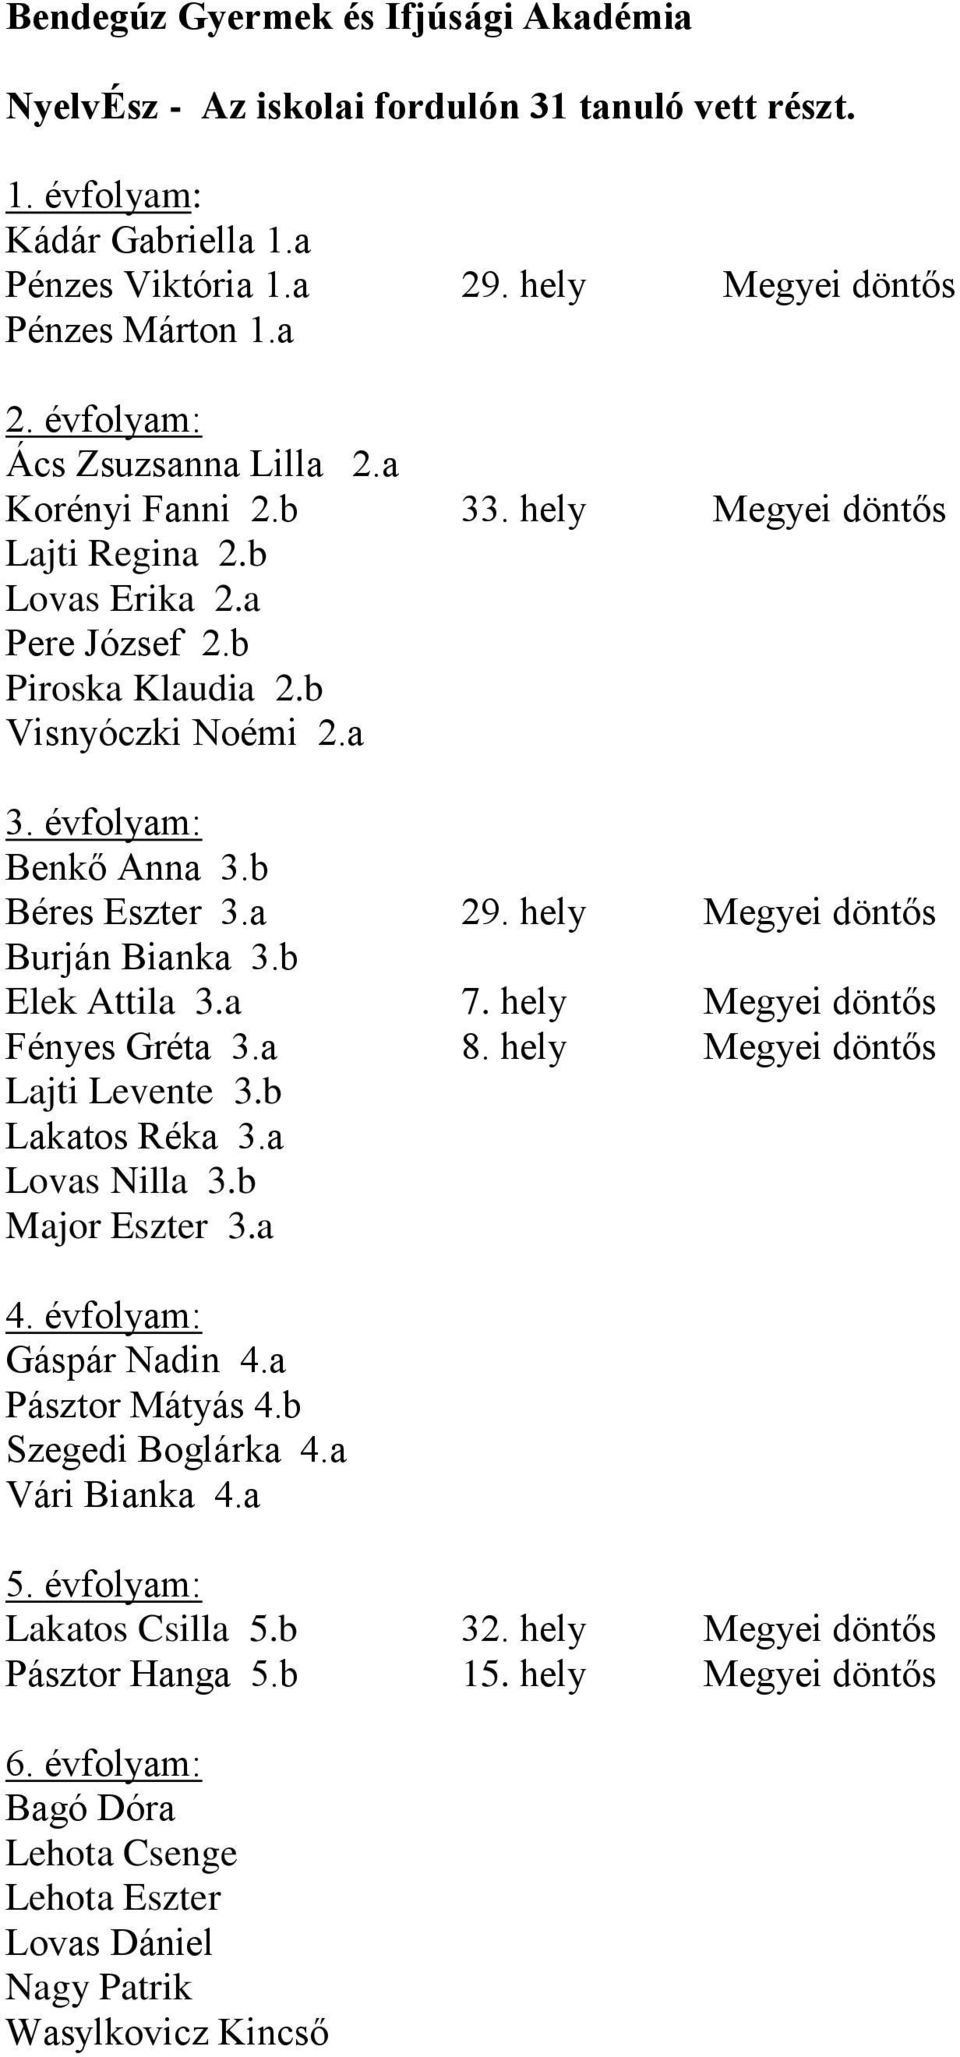 a Fényes Gréta 3.a Lajti Levente 3.b Lakatos Réka 3.a Lovas Nilla 3.b Major Eszter 3.a 29. hely Megyei döntős 33. hely Megyei döntős 29. hely Megyei döntős 7. hely Megyei döntős 8.